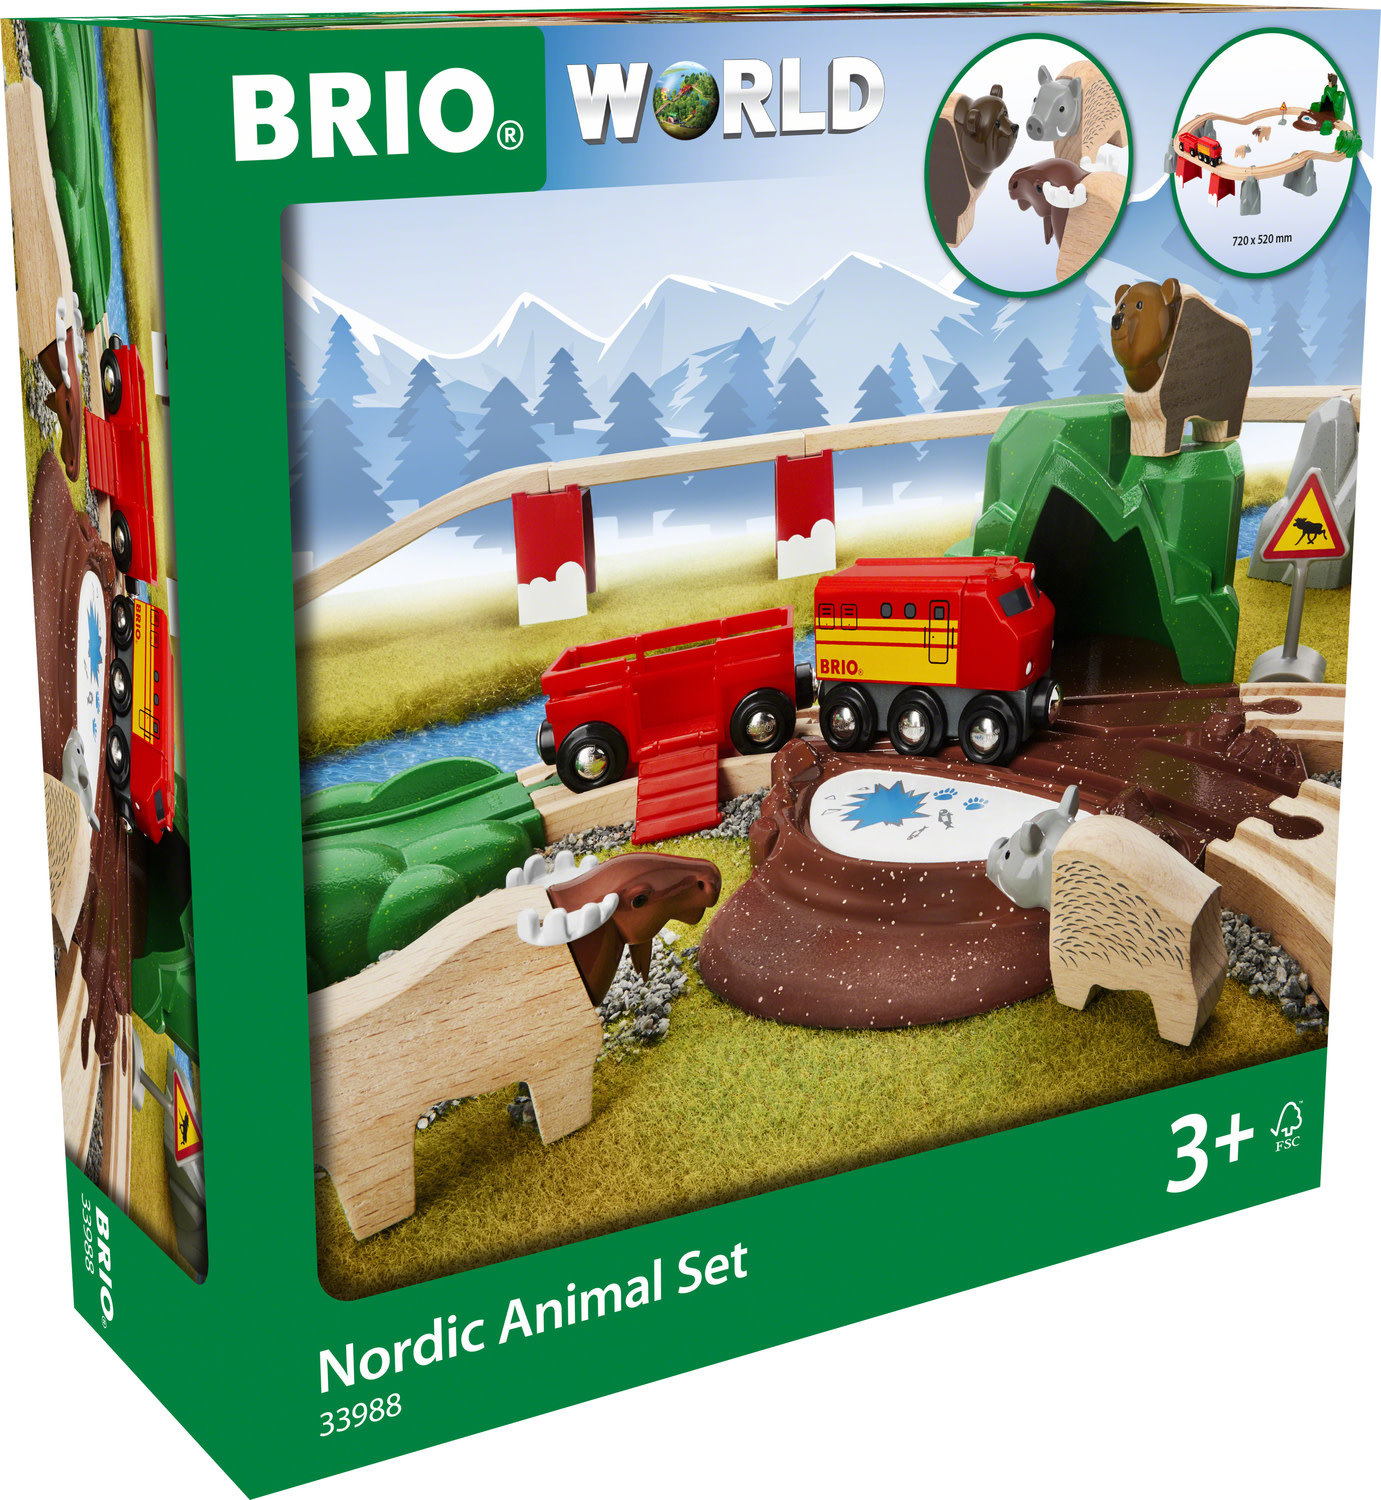 BRIO Forest Animal Set